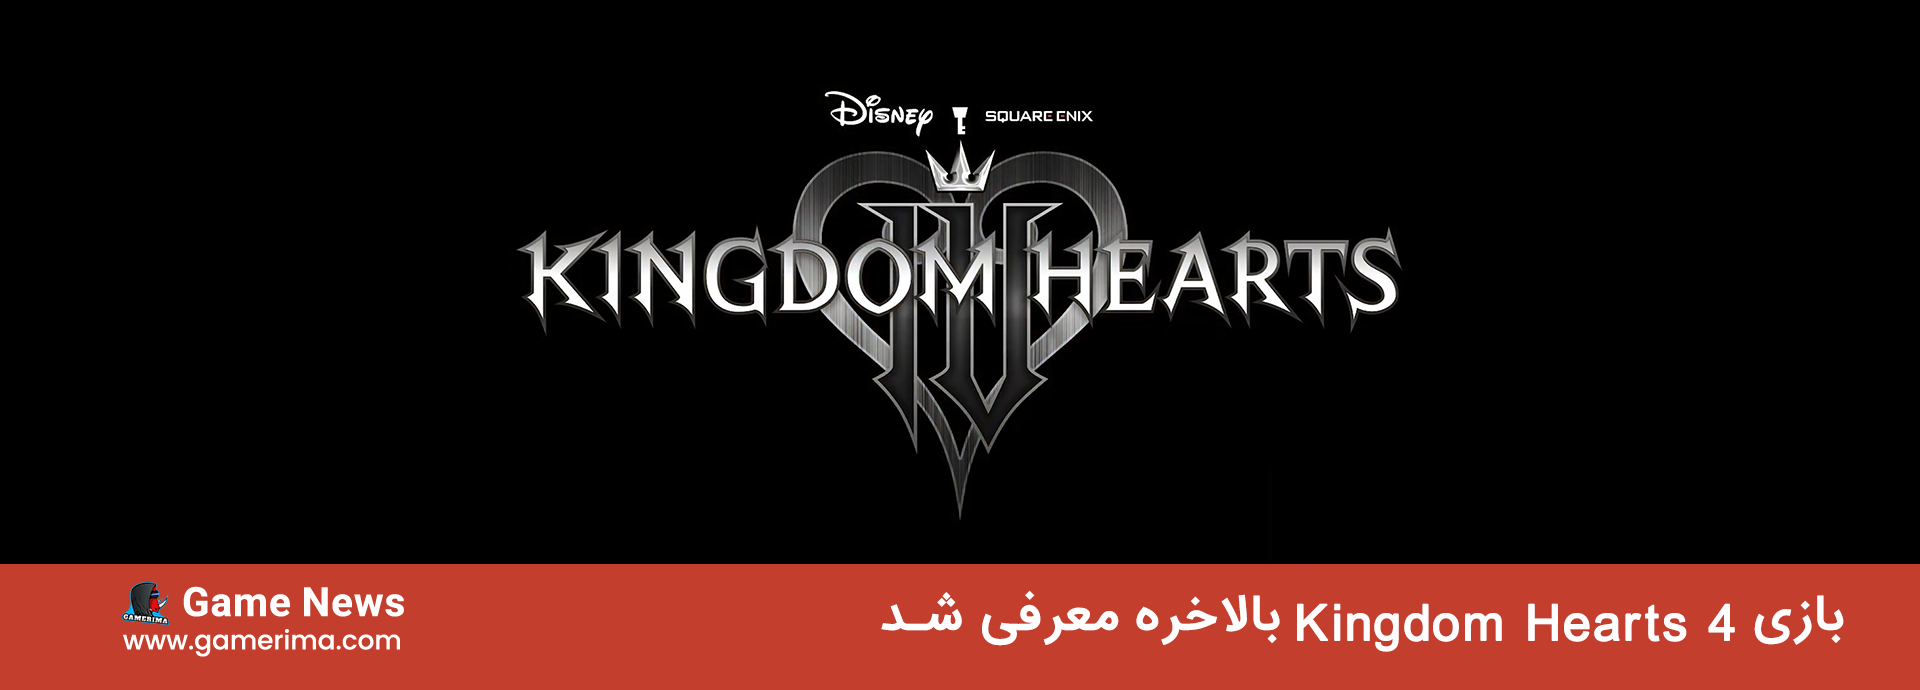 از بازی Kingdom hearts 4 بالاخره معرفی شد